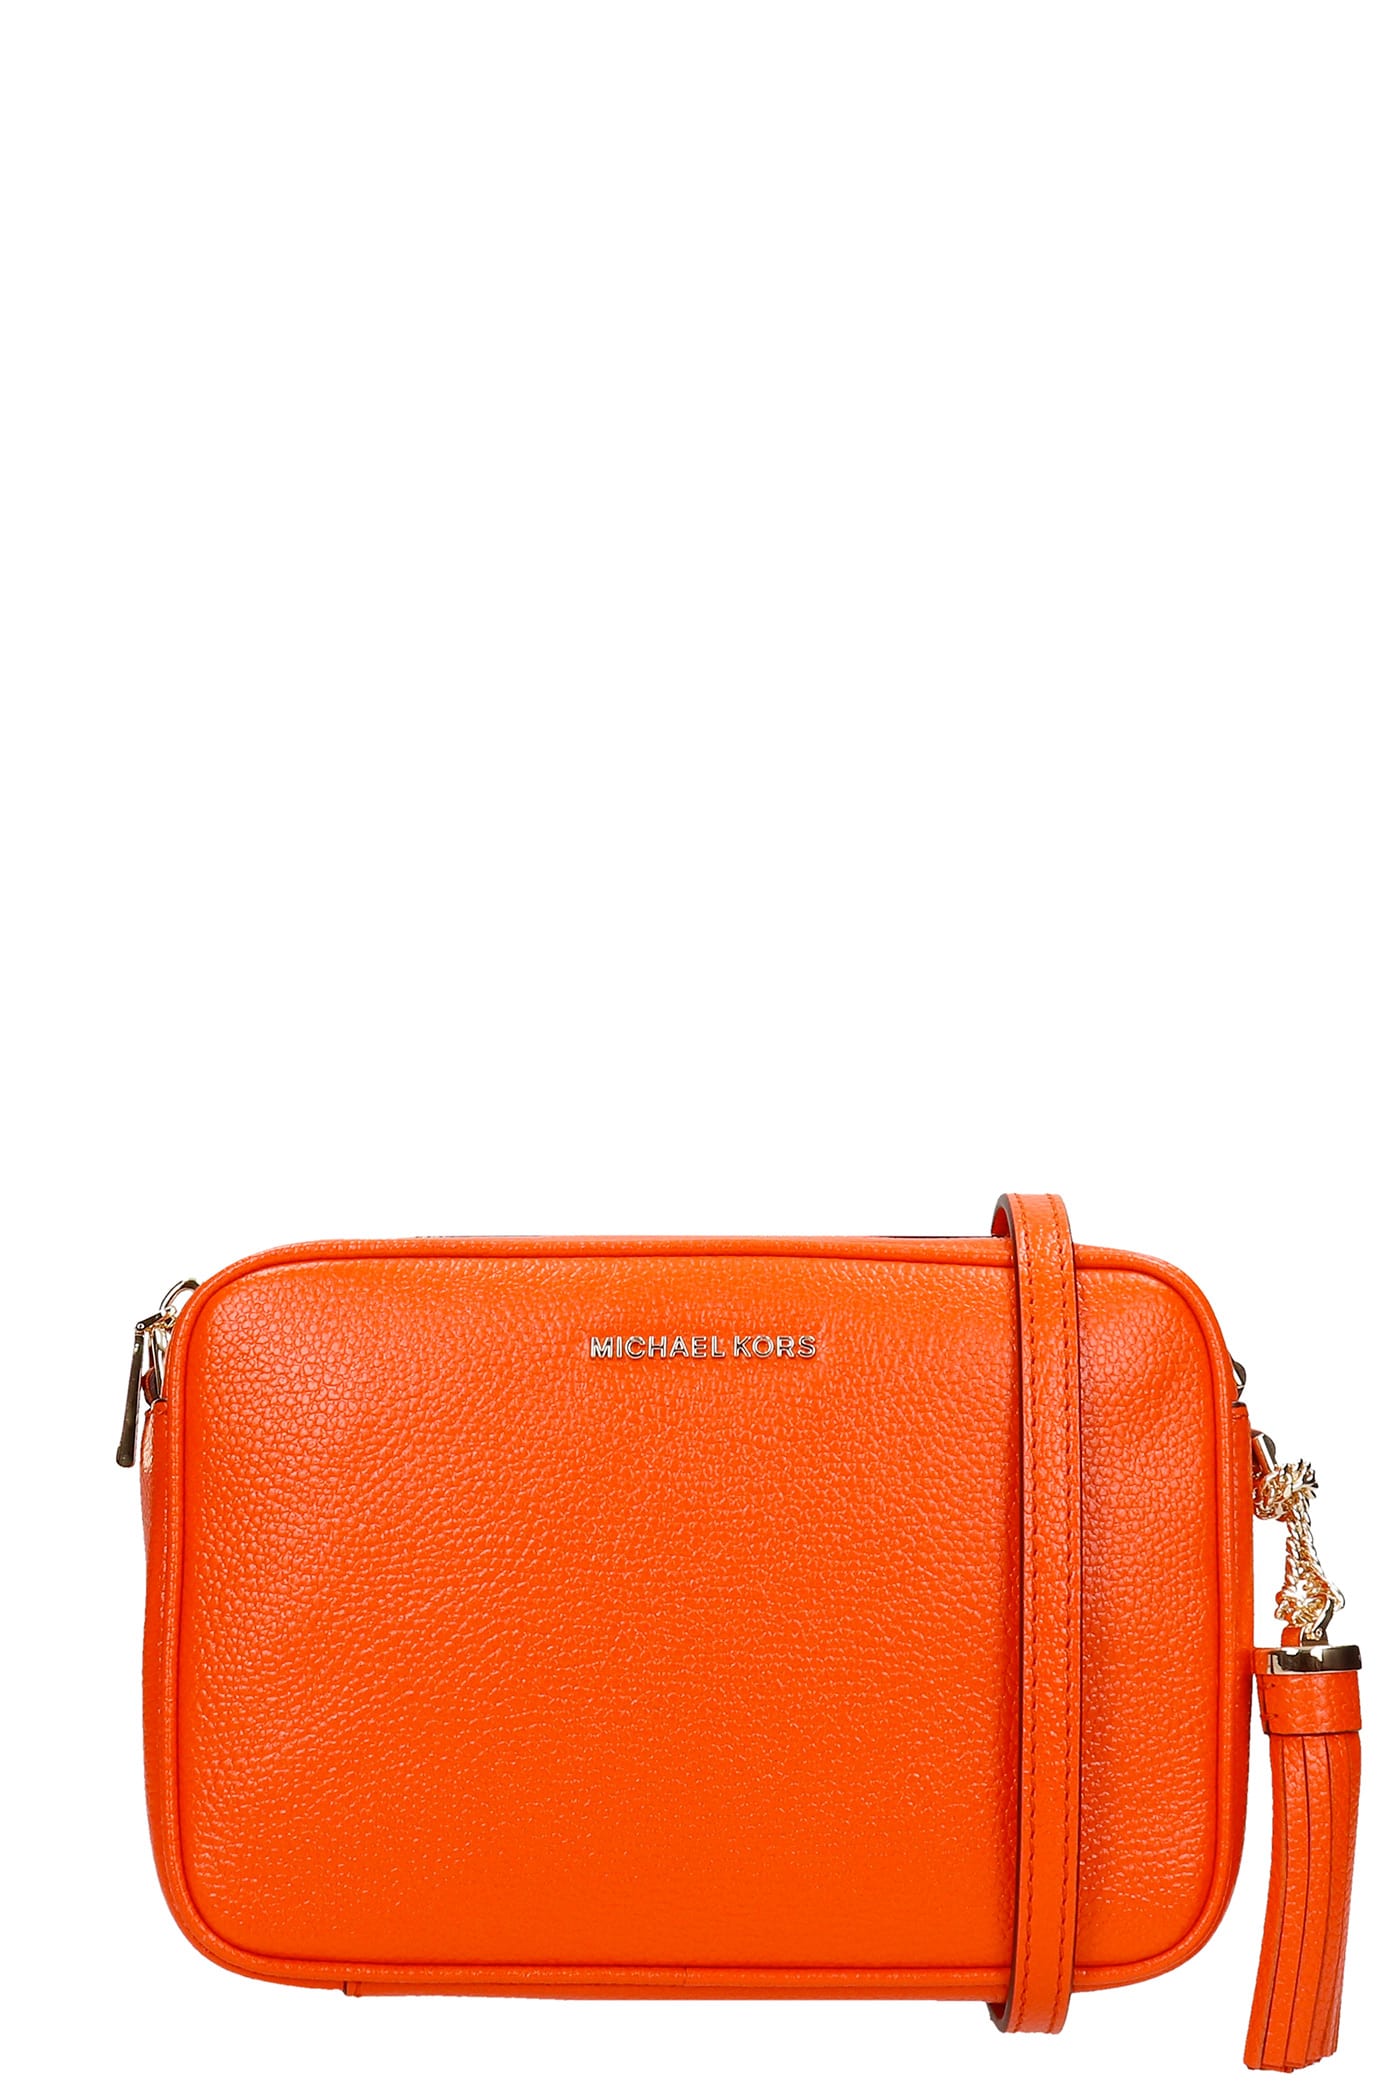 MICHAEL Michael Kors Shoulder Bag In Orange Leather